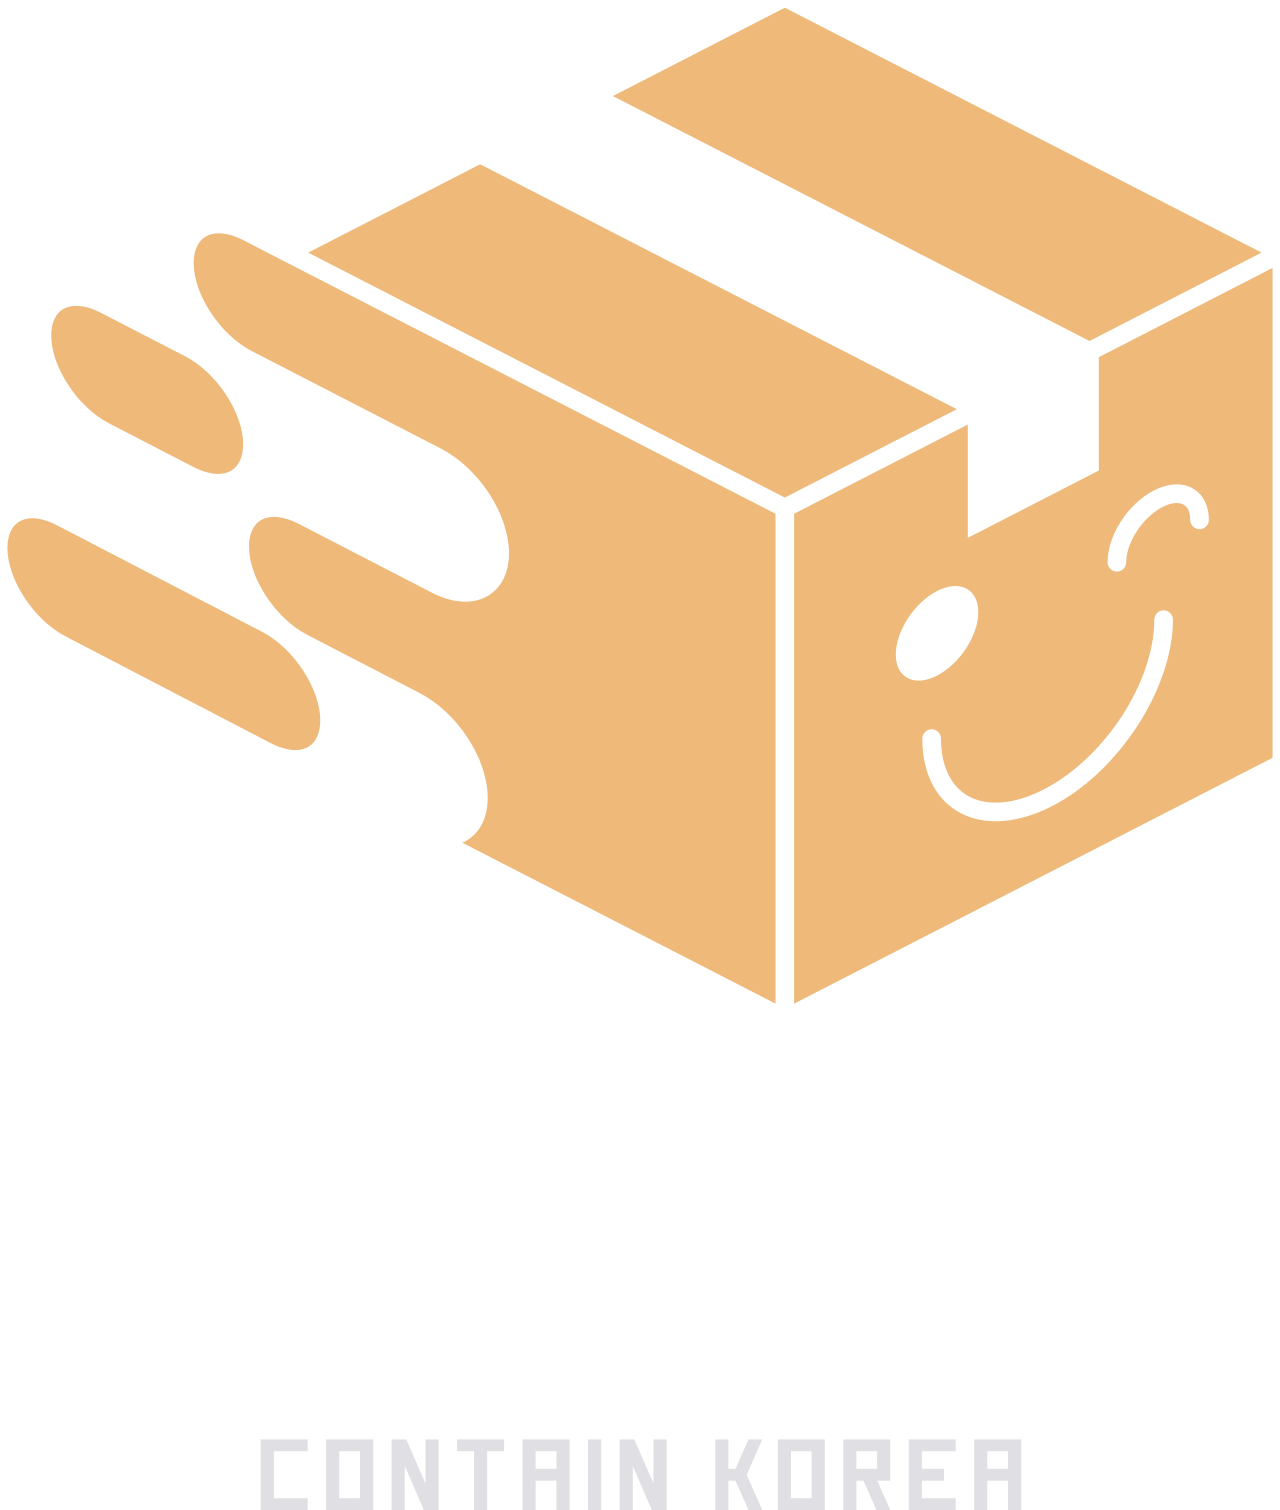 K-BOX's logo